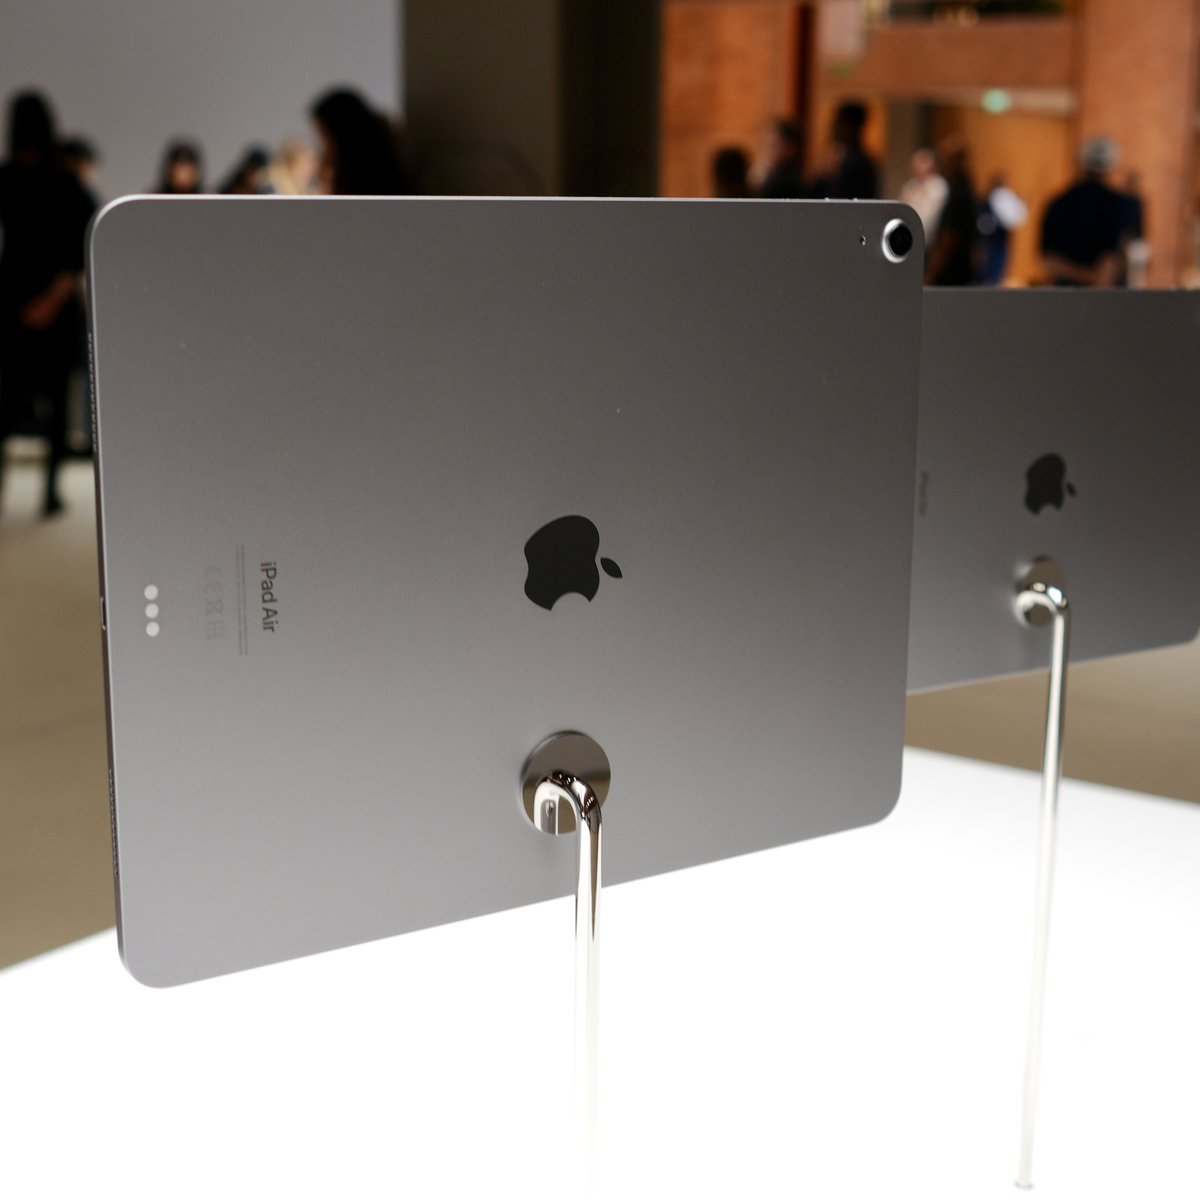 เครื่องจริงของ iPad Air ใหม่ทั้ง 4 สีครับ

สีฟ้าโทนใหม่
สีม่วงโทนใหม่
สี Starlight
สี Space Grey

#AppleEvent